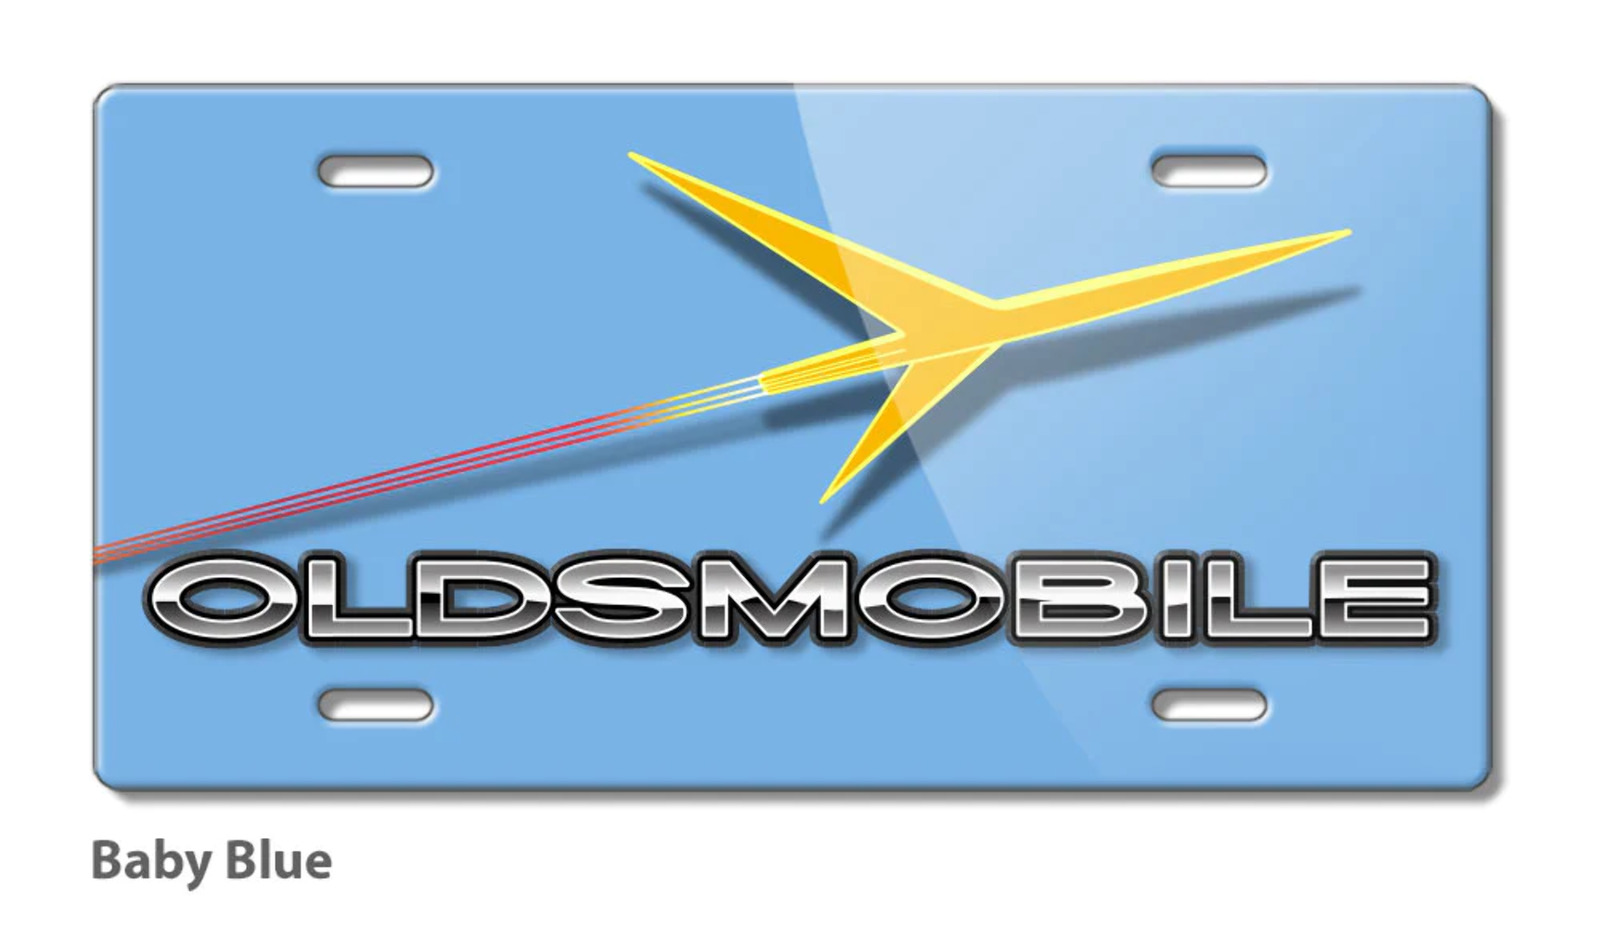 Oldsmobile Rocket Emblem 1957 - 1960 Aluminum License Plate - 16 colors Made USA